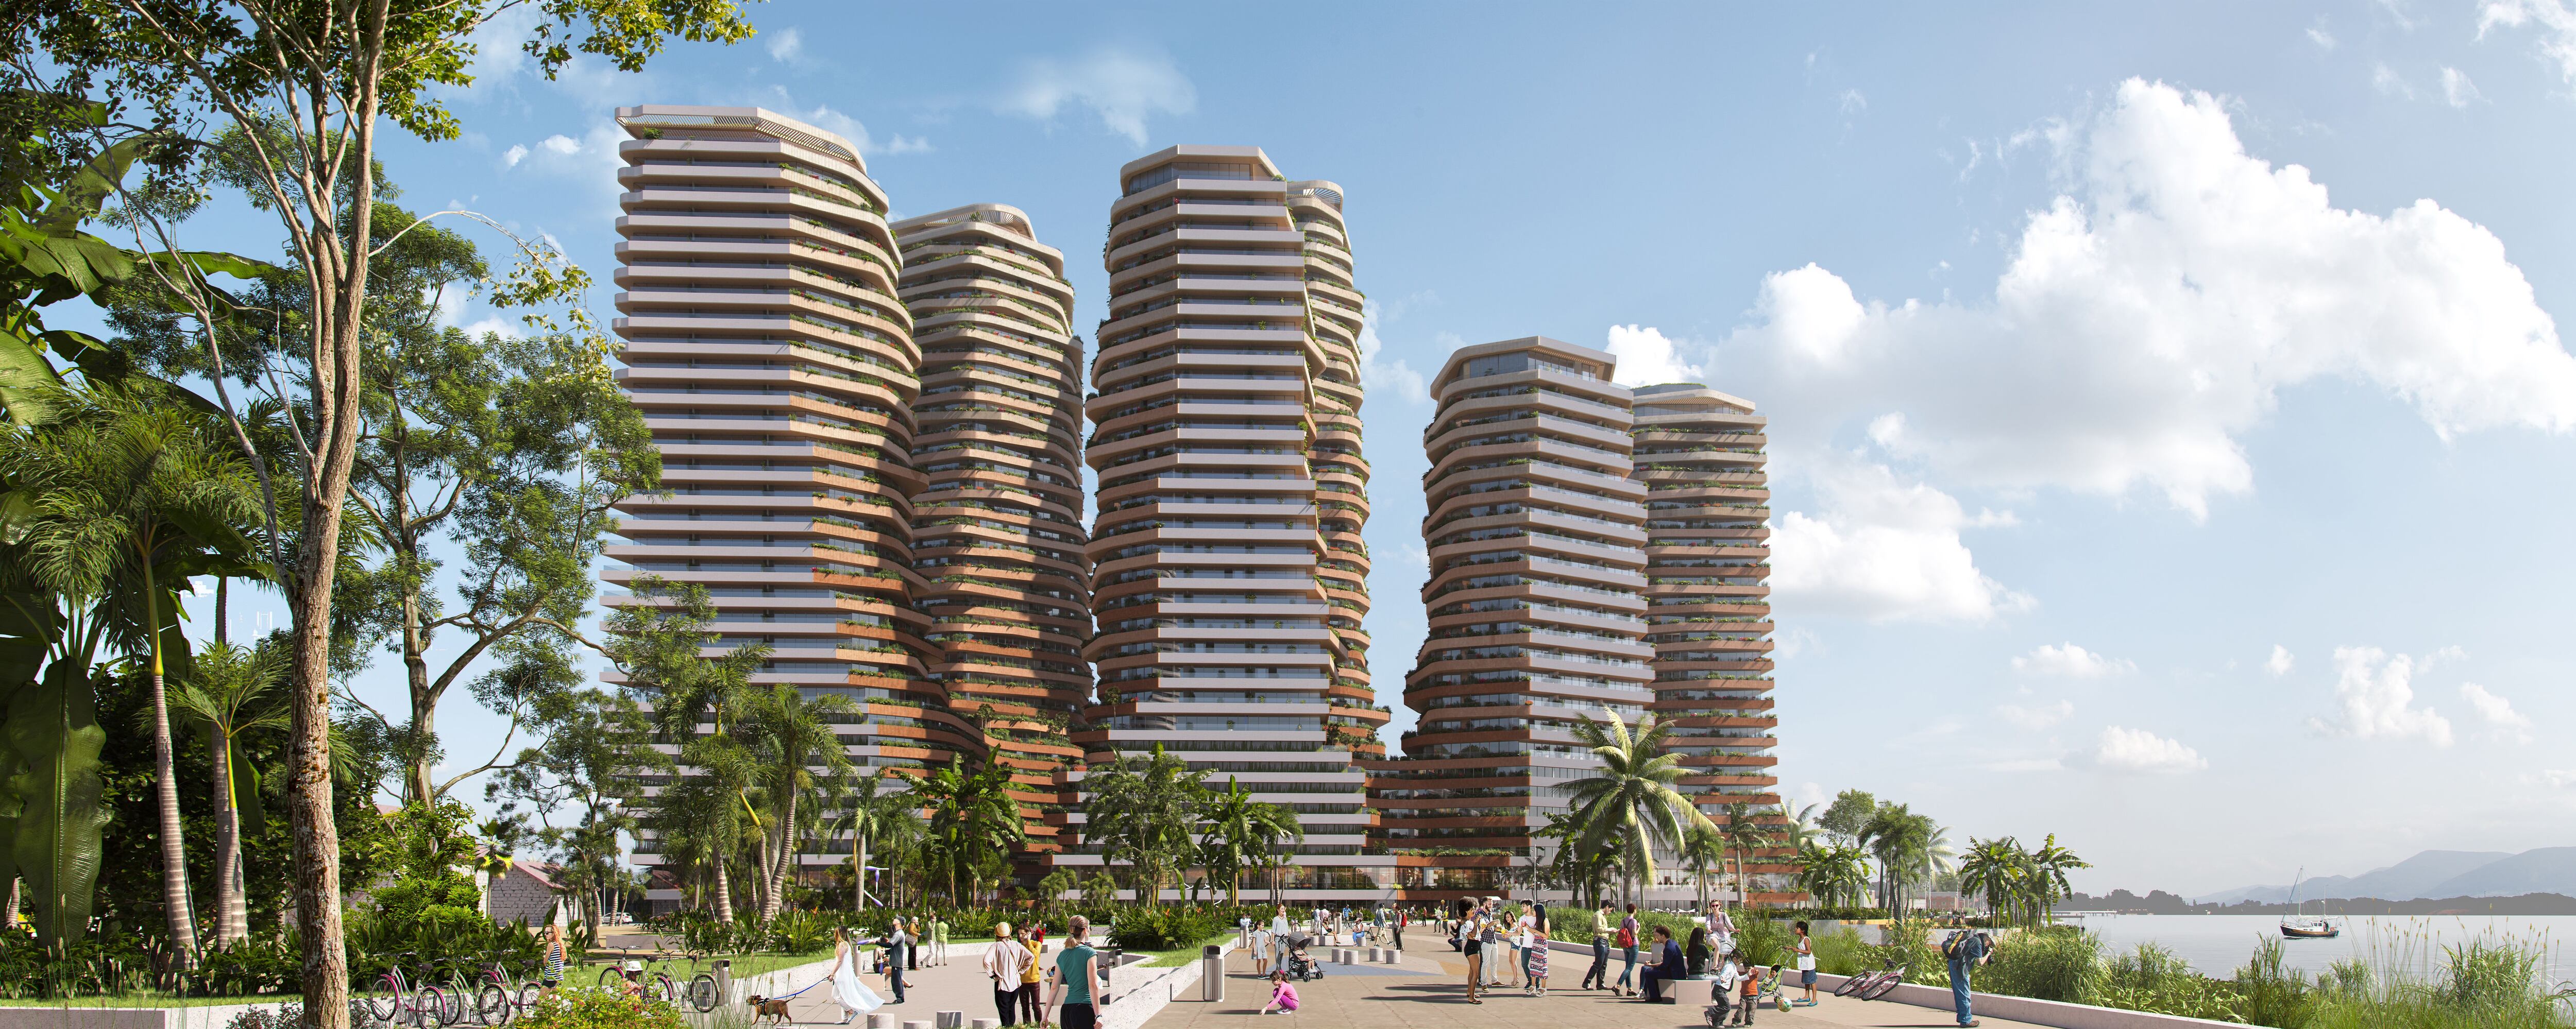 11/09/2022. Modelo de las cinco torres del complejo The Hills, que se construirá en Puerto Santa Ana, en Guayaquil. LA REVISTA, VIVIENDA